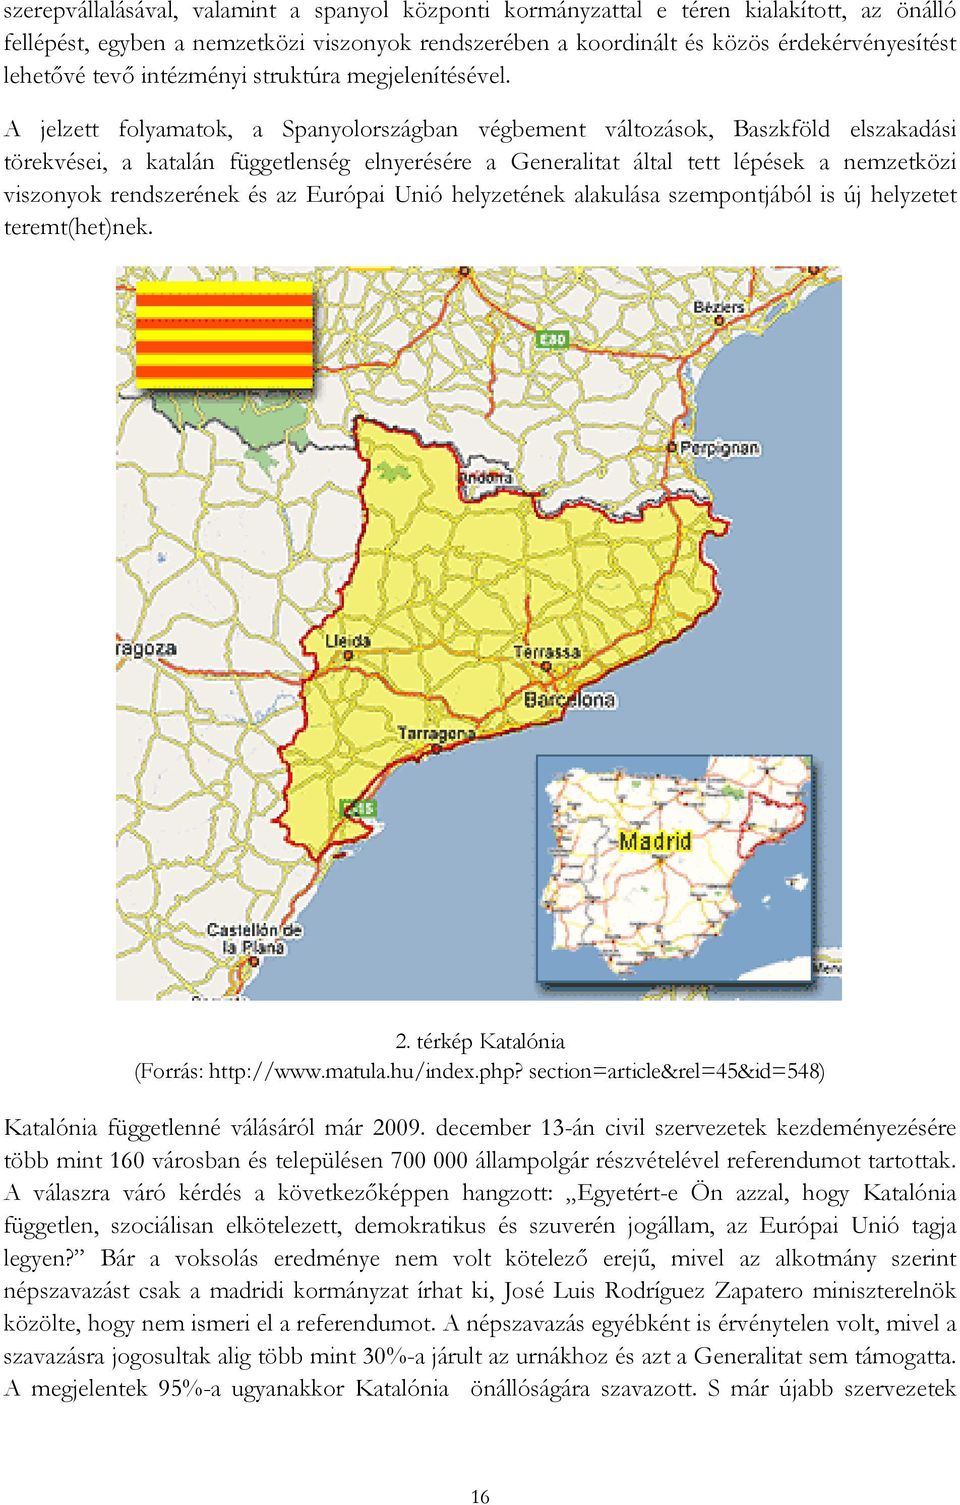 A jelzett folyamatok, a Spanyolországban végbement változások, Baszkföld elszakadási törekvései, a katalán függetlenség elnyerésére a Generalitat által tett lépések a nemzetközi viszonyok